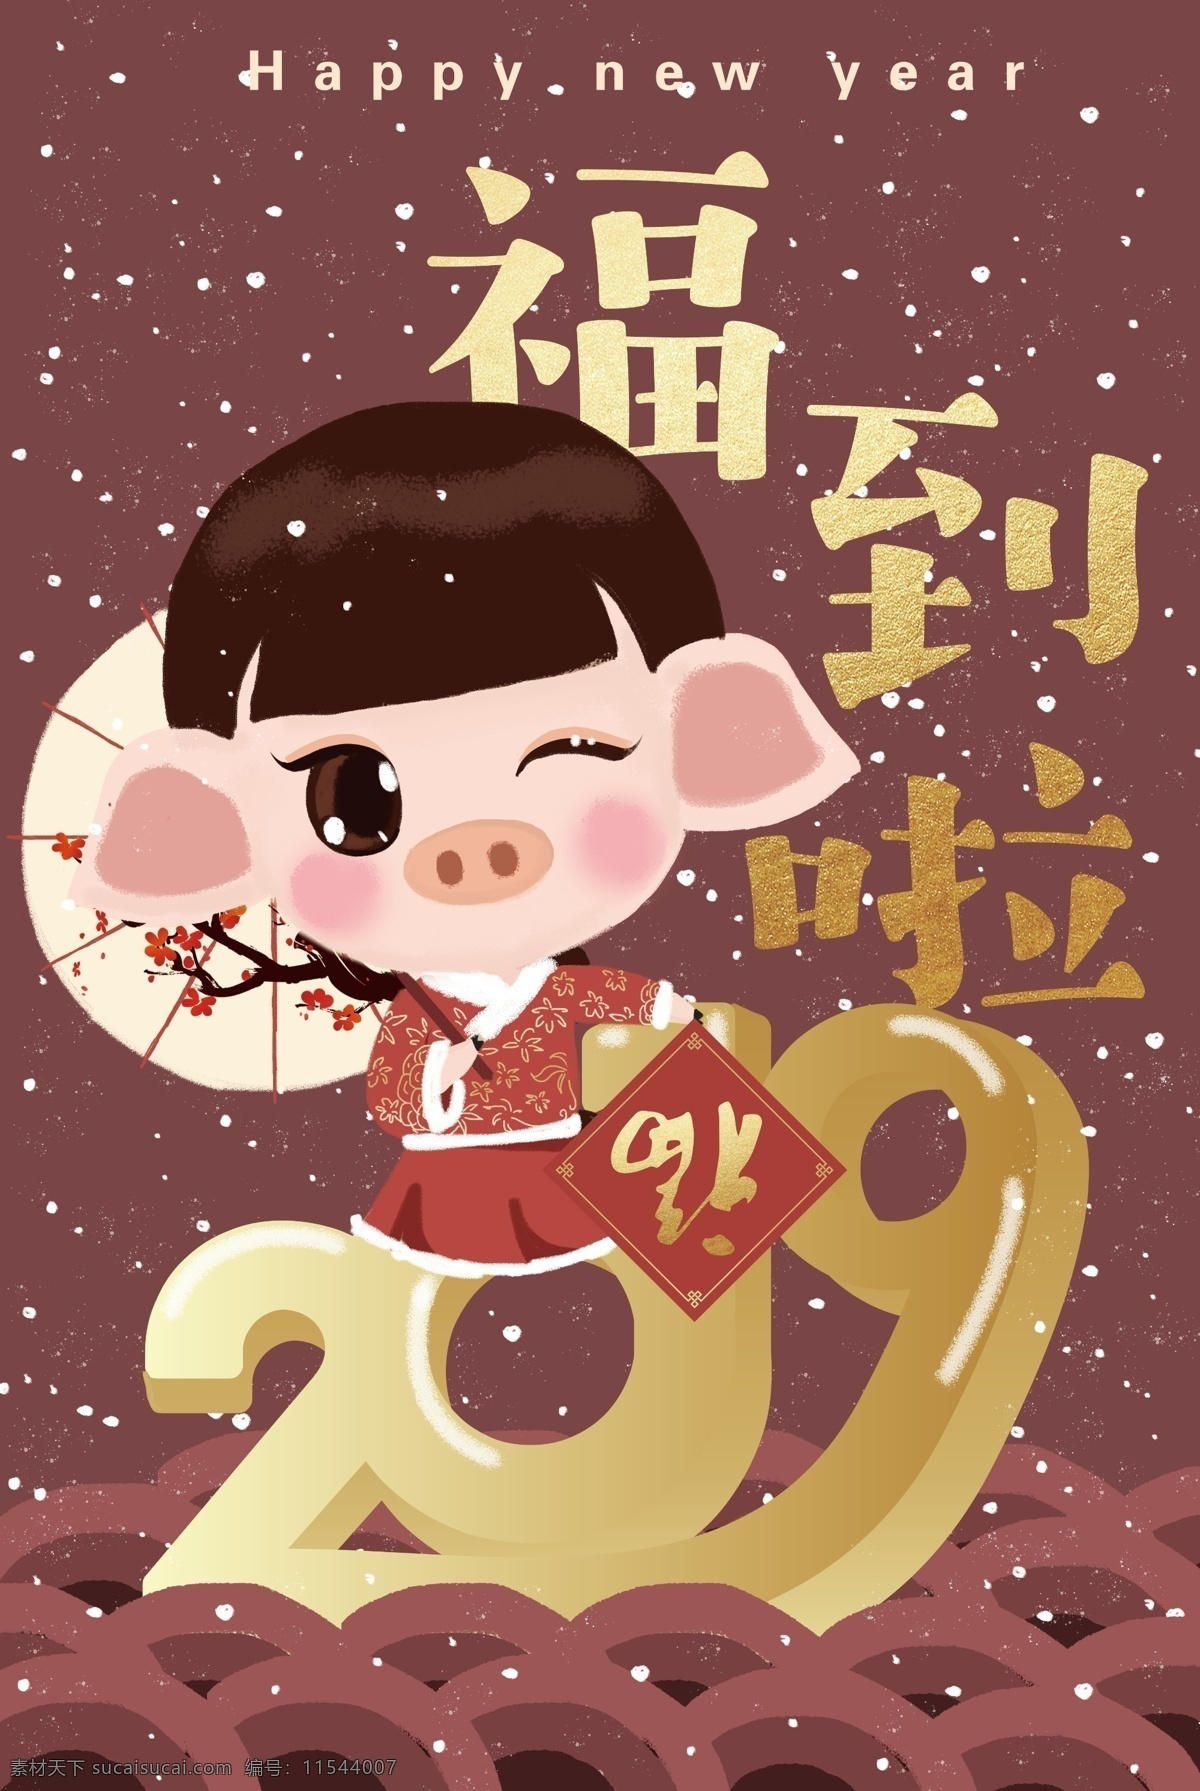 美女 小 猪 福 创意 海报 原创 插画 猪年 2019 年 新年 创意插画 卡通小猪 可爱中国风